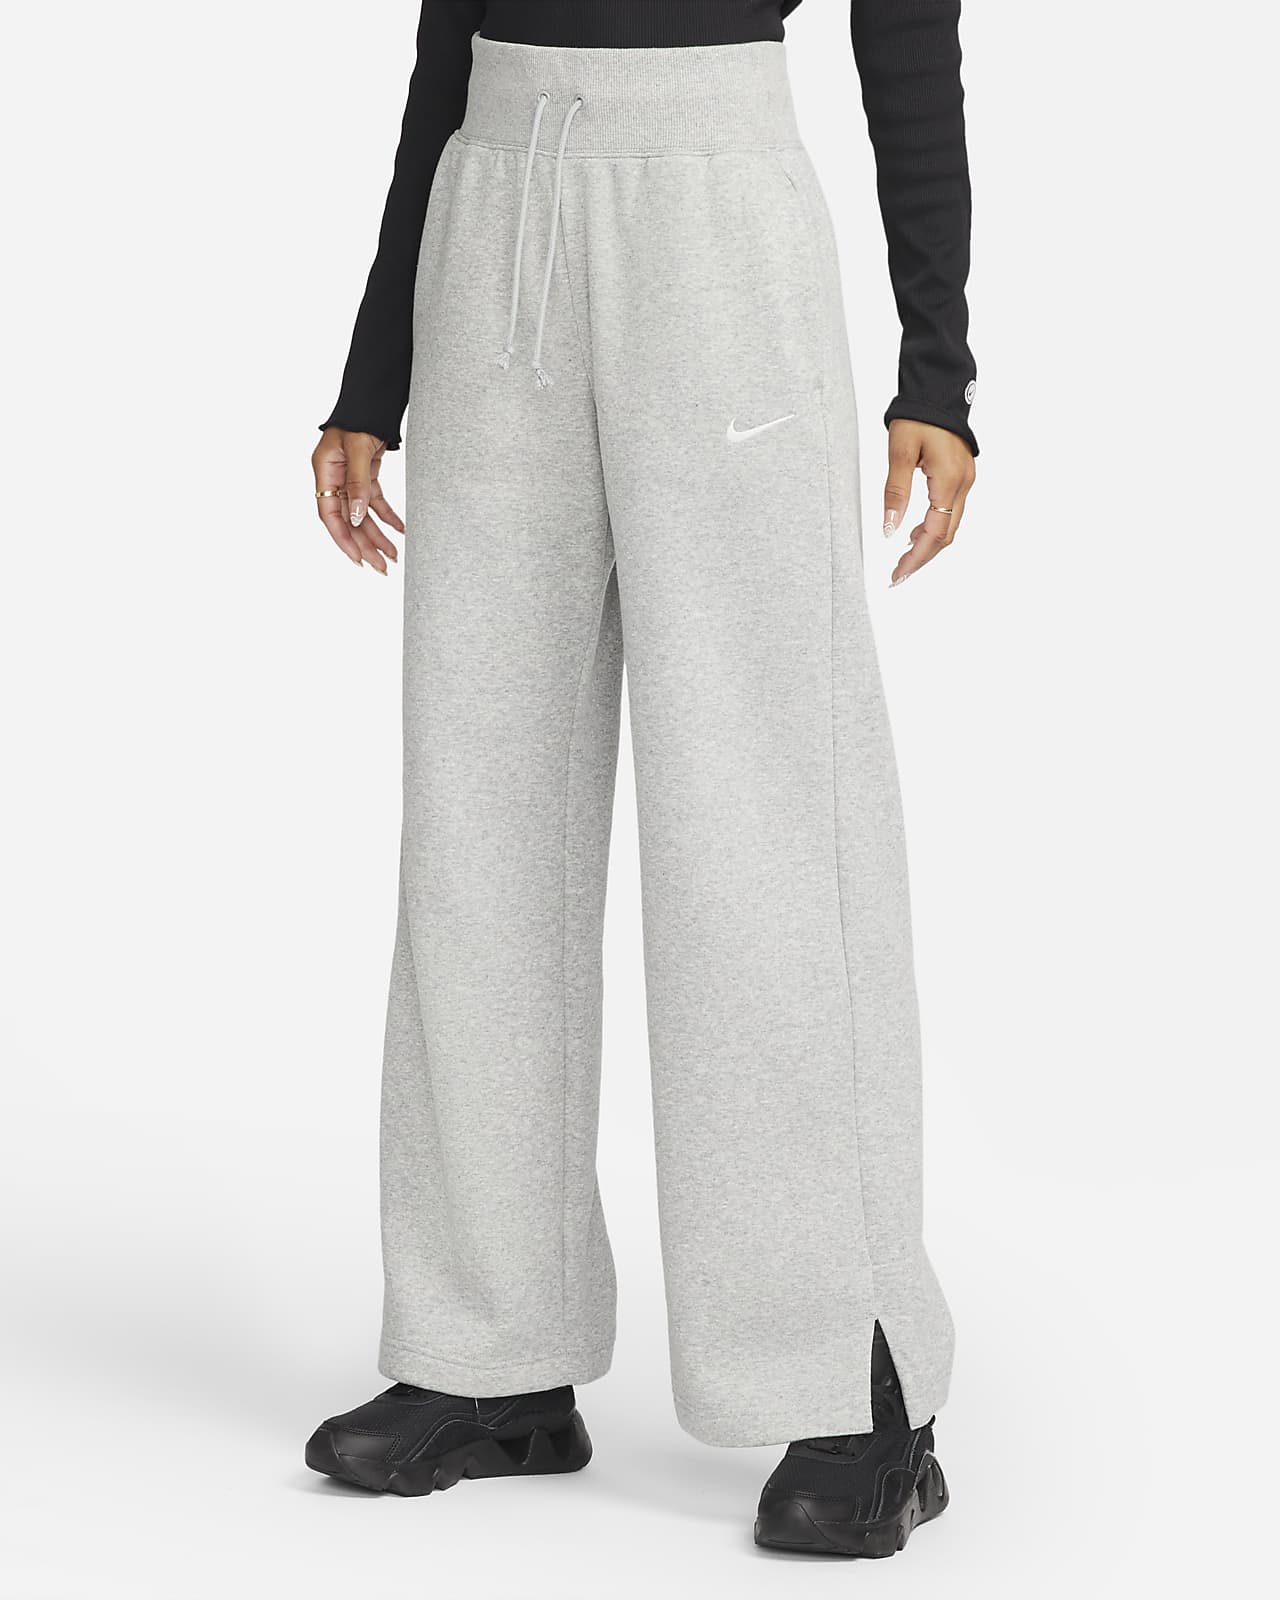 Γυναικείο ψηλόμεσο παντελόνι φόρμας με φαρδιά μπατζάκια Nike Sportswear Phoenix Fleece